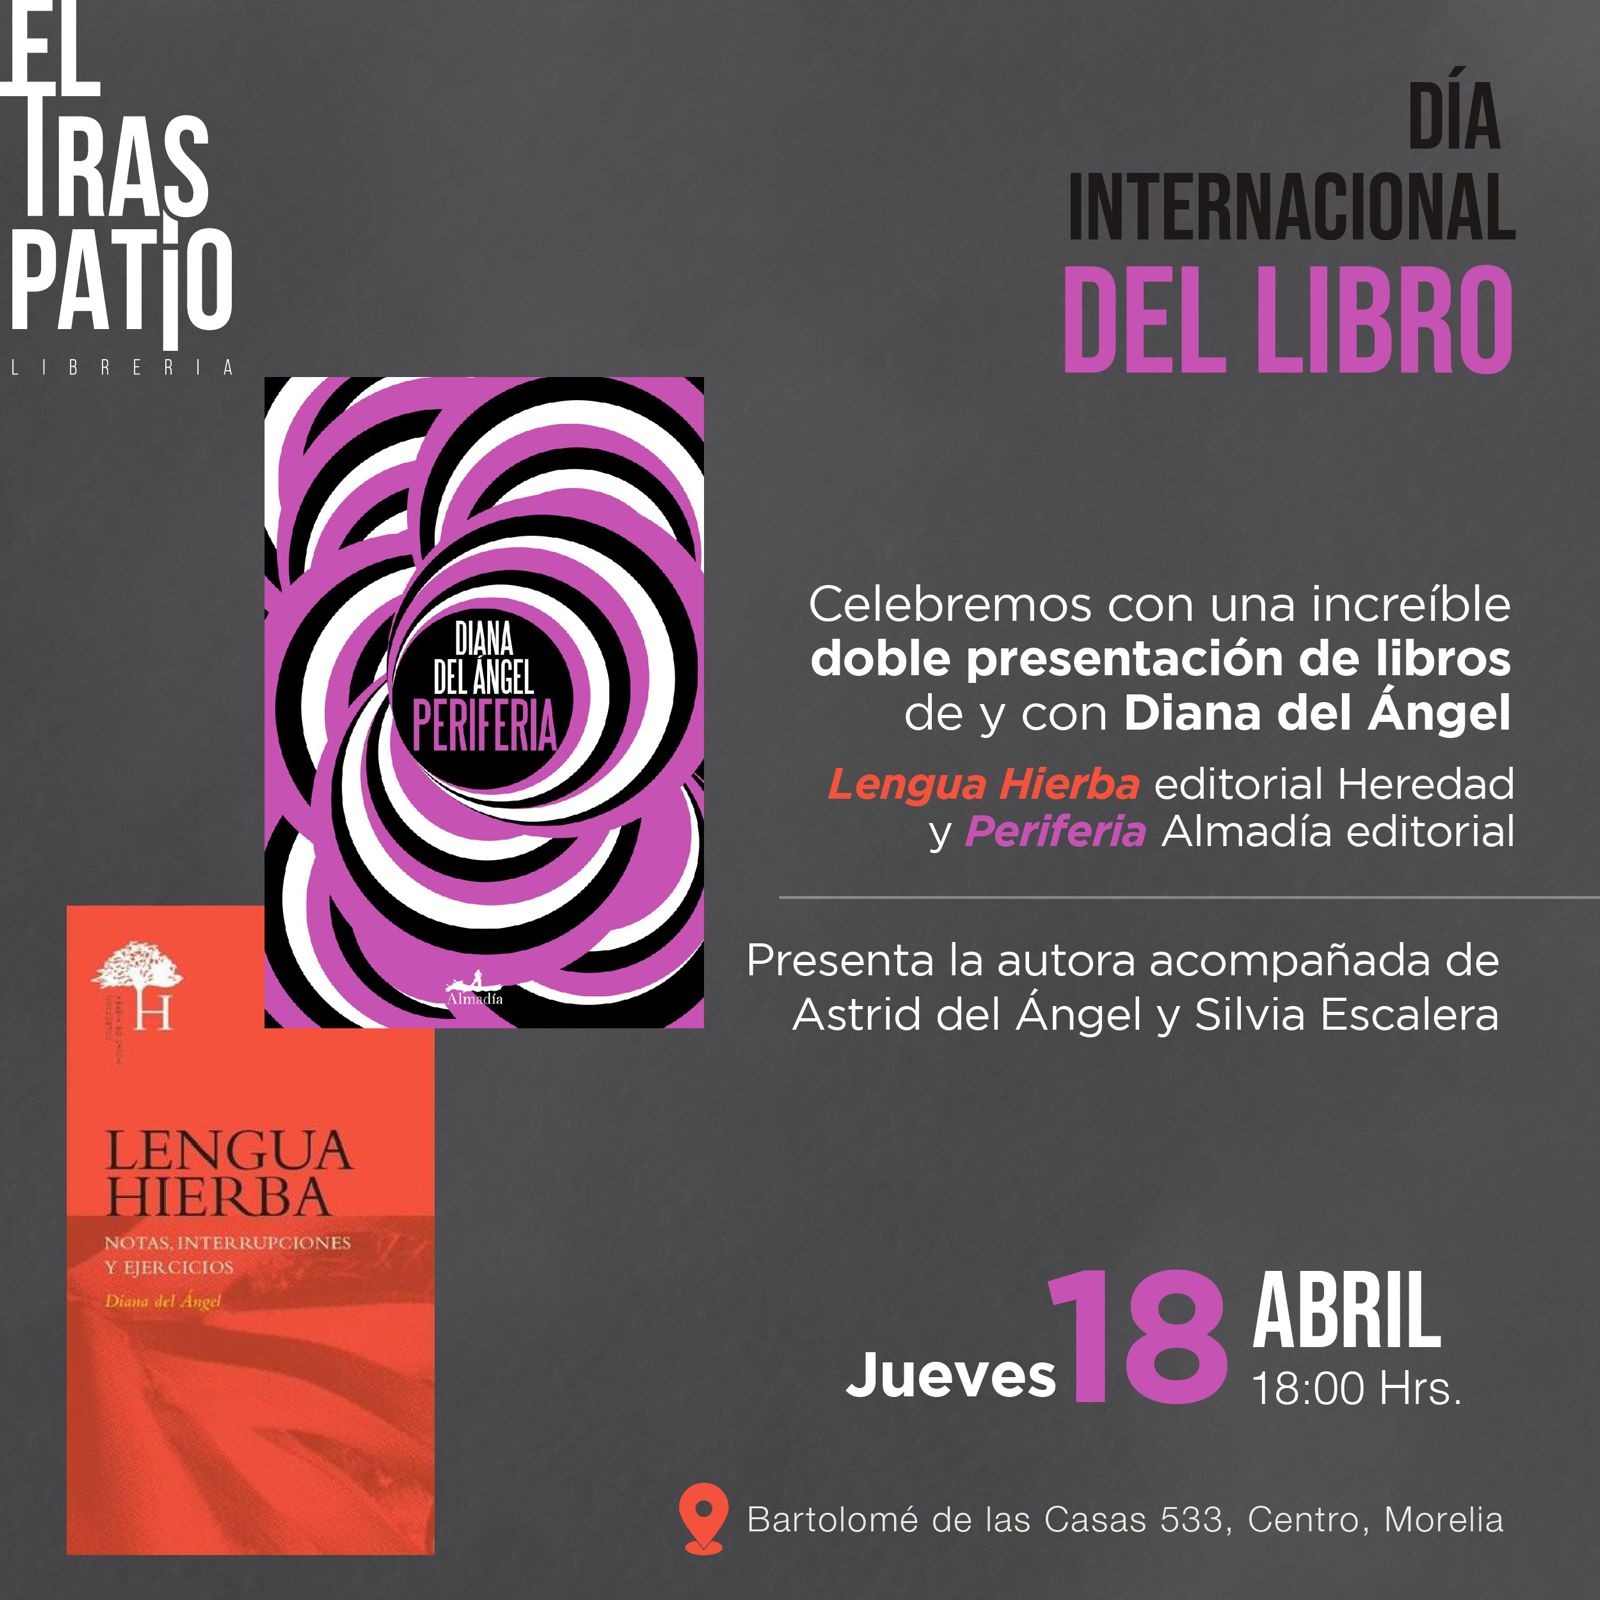 “El Traspatio” prepara actividades para celebrar el Día Internacional del libro, en Michoacán